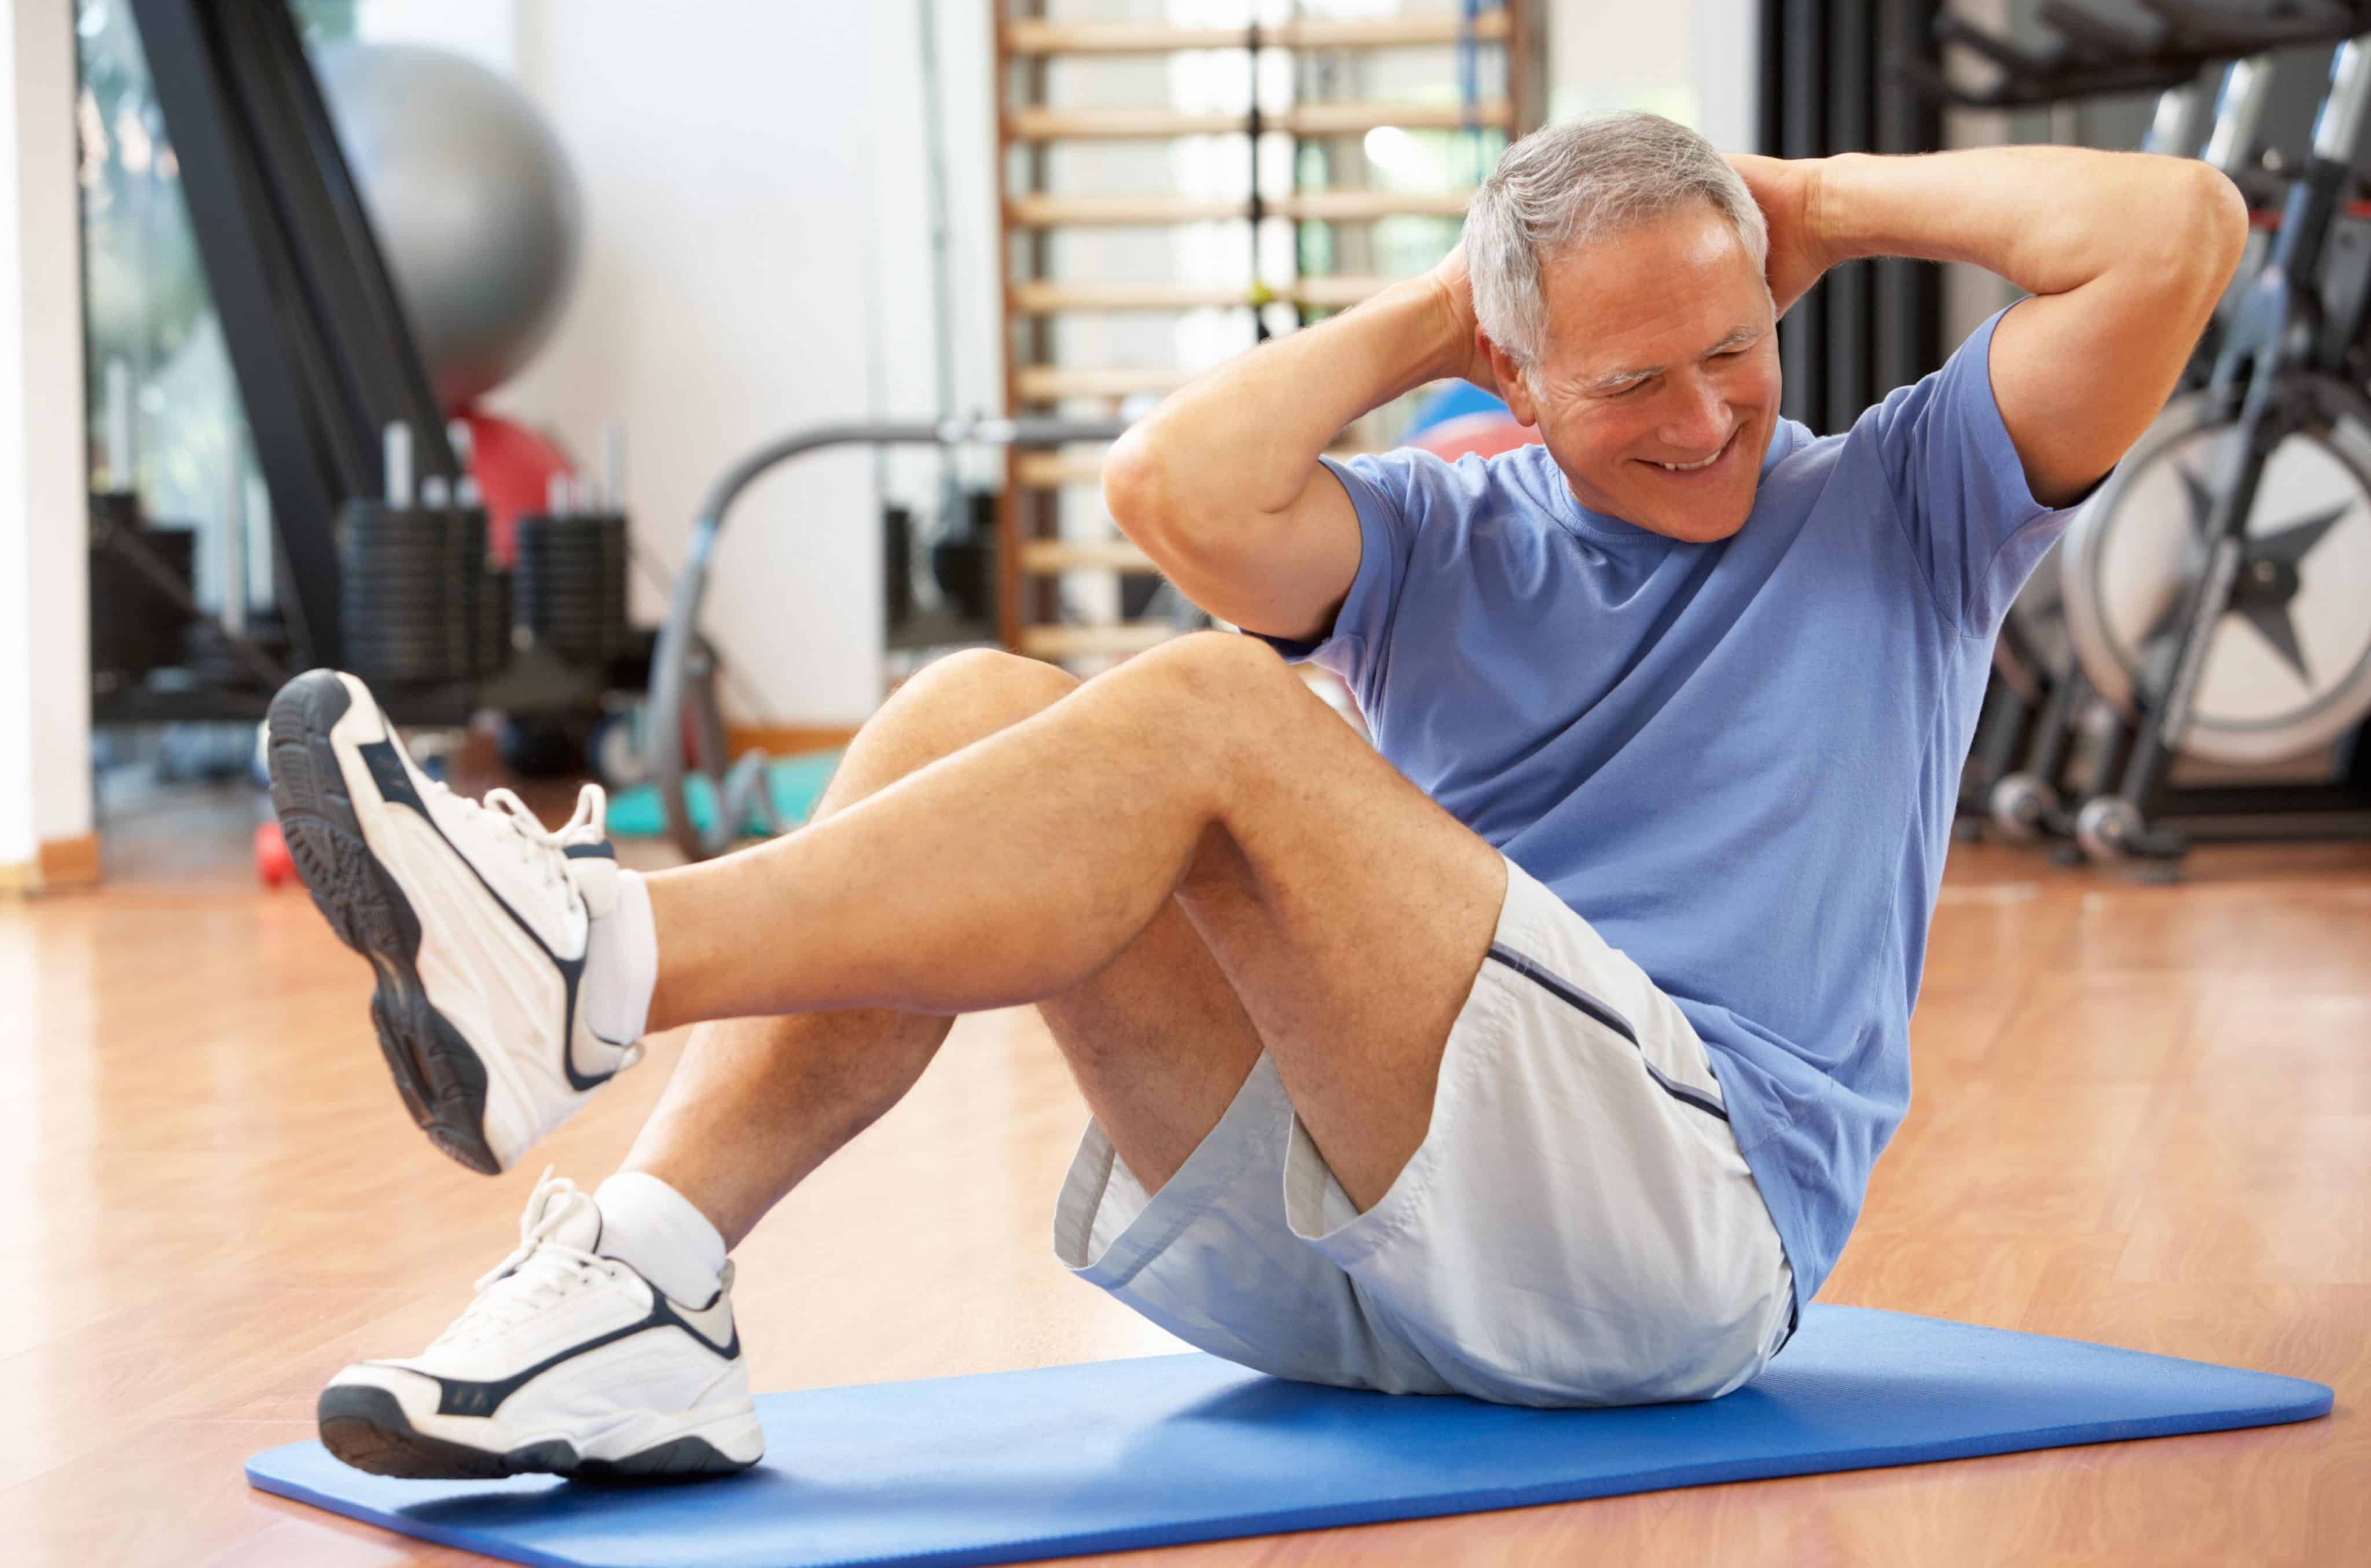 40 лет мужчине здоровье. Физические упражнения. Физические нагрузки. Пожилой мужчина занимается спортом. Физические тренировки.